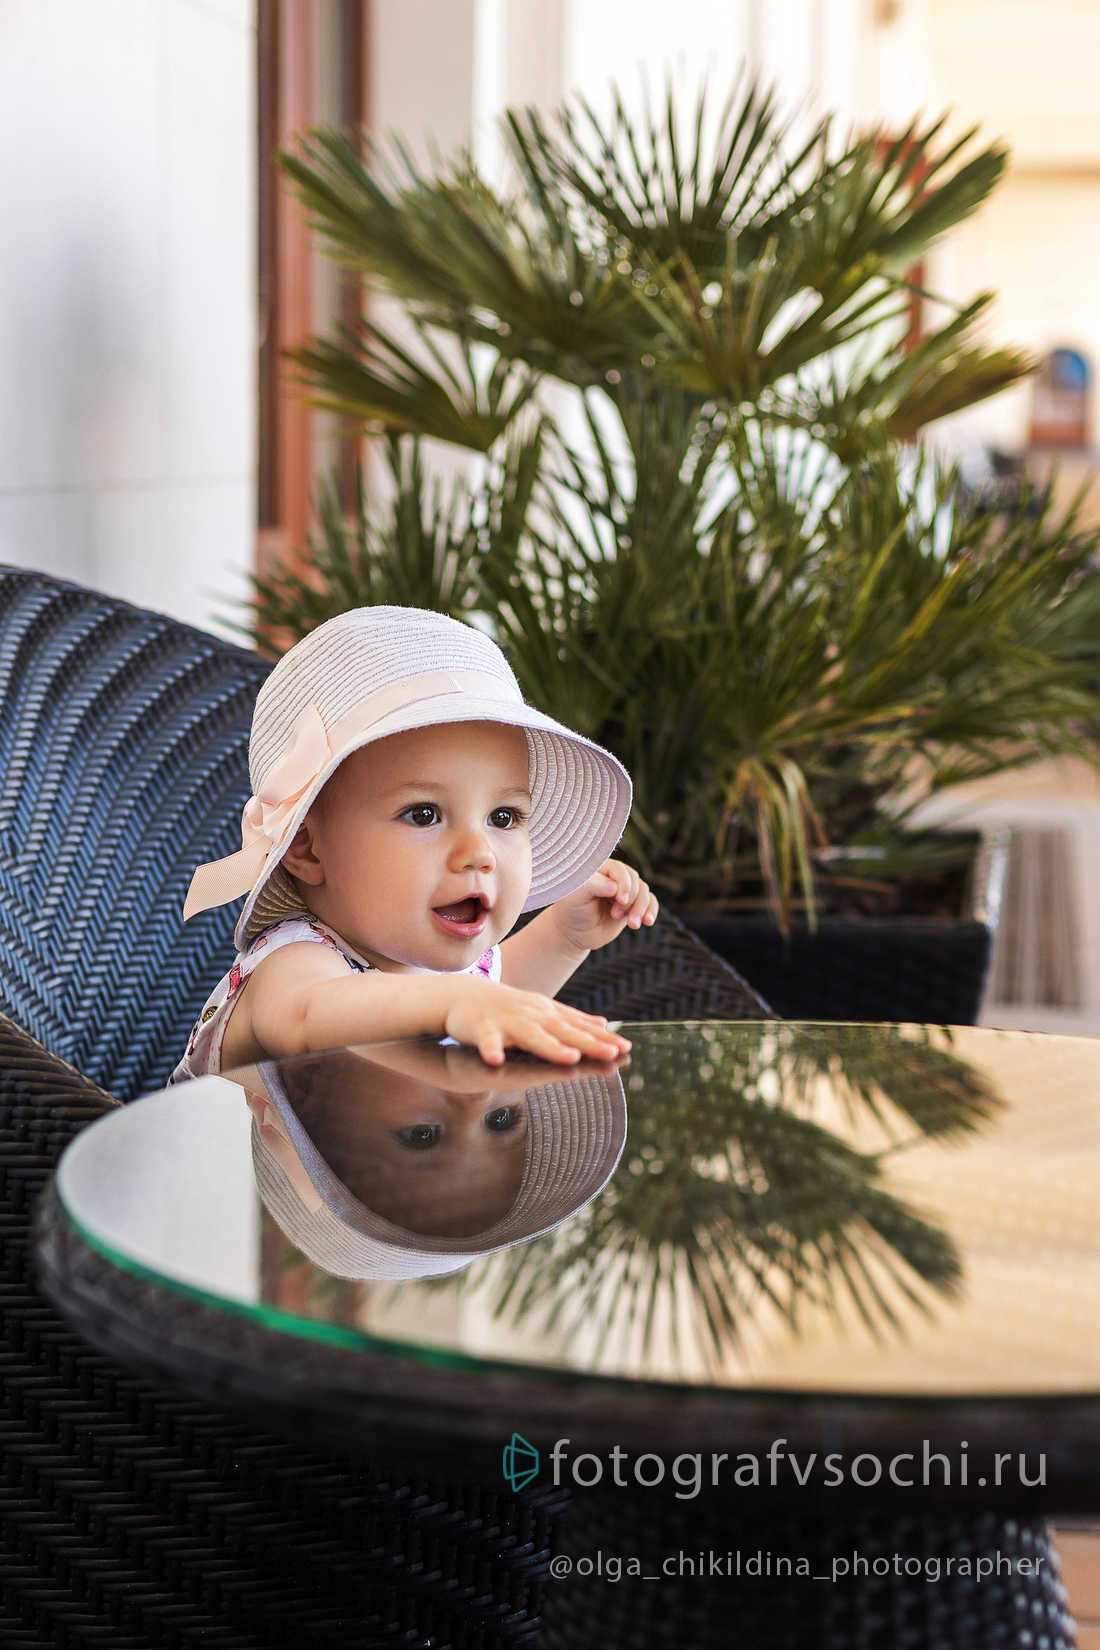 Маленькая девочка в шляпке сидит за стеклянным столом